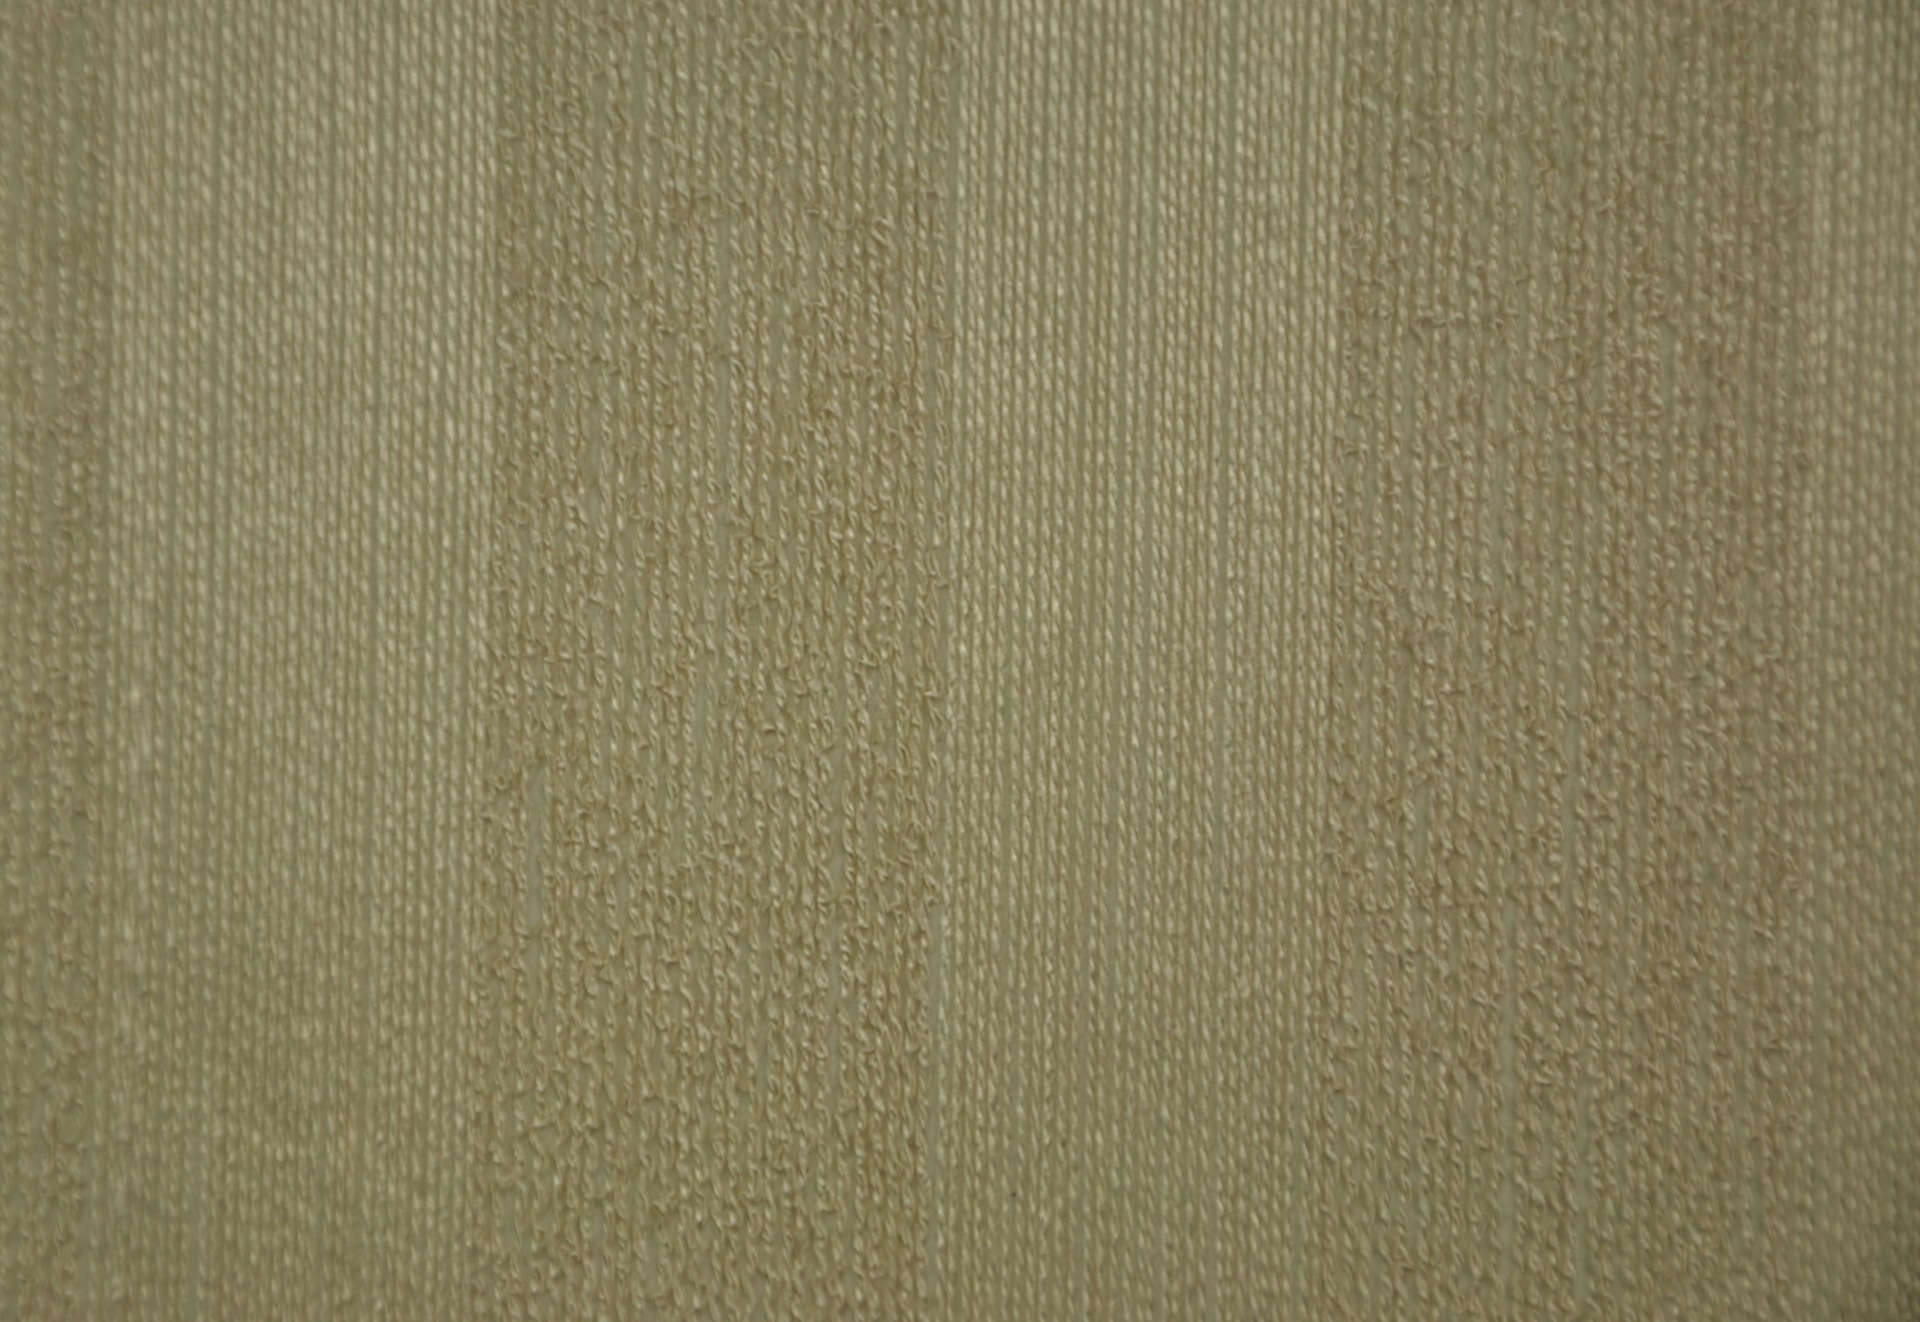 特价供应室内家装建材纱线系列墙纸 素色壁纸优等品 雅园g60168